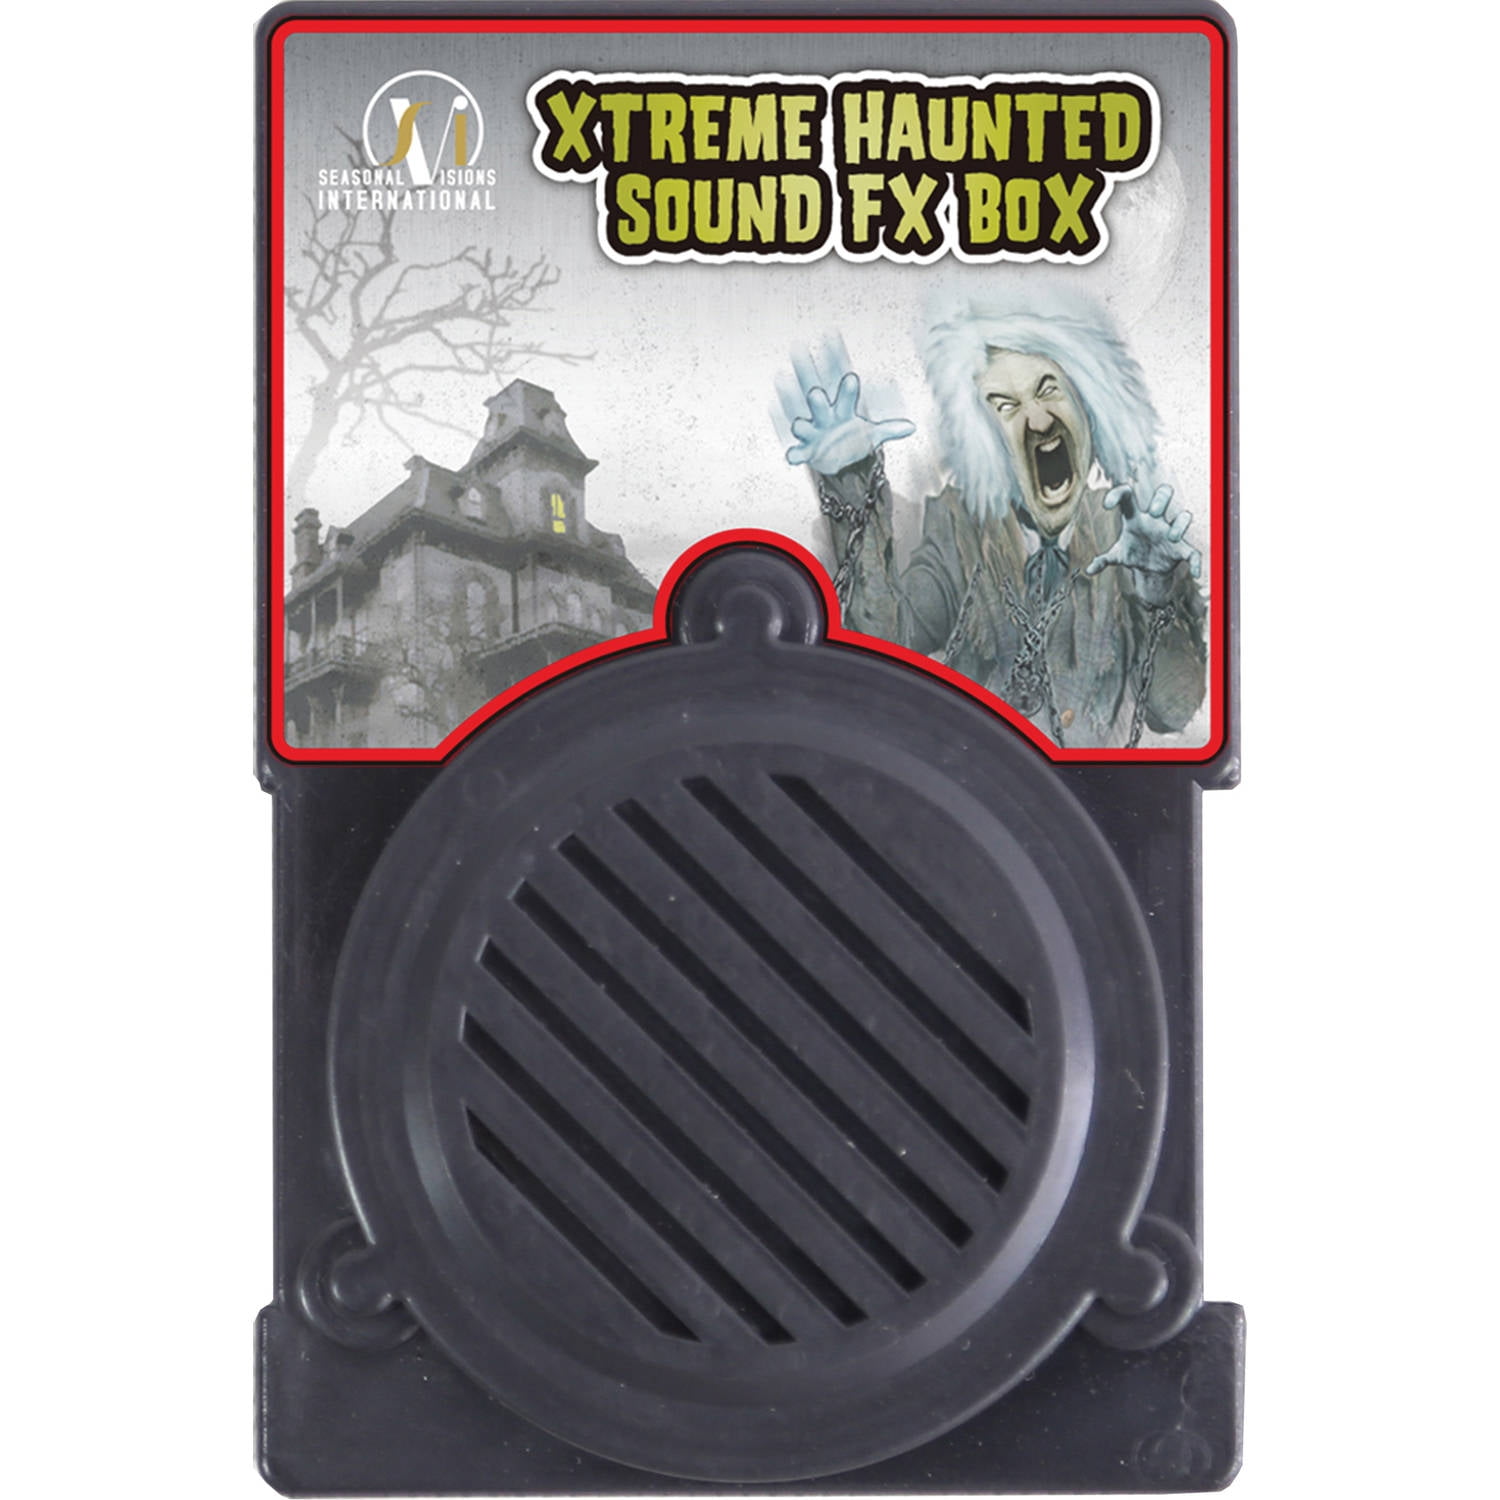 Sound Machine Halloween für echten Horror-Sound Sound Box Soundmachine Angst 